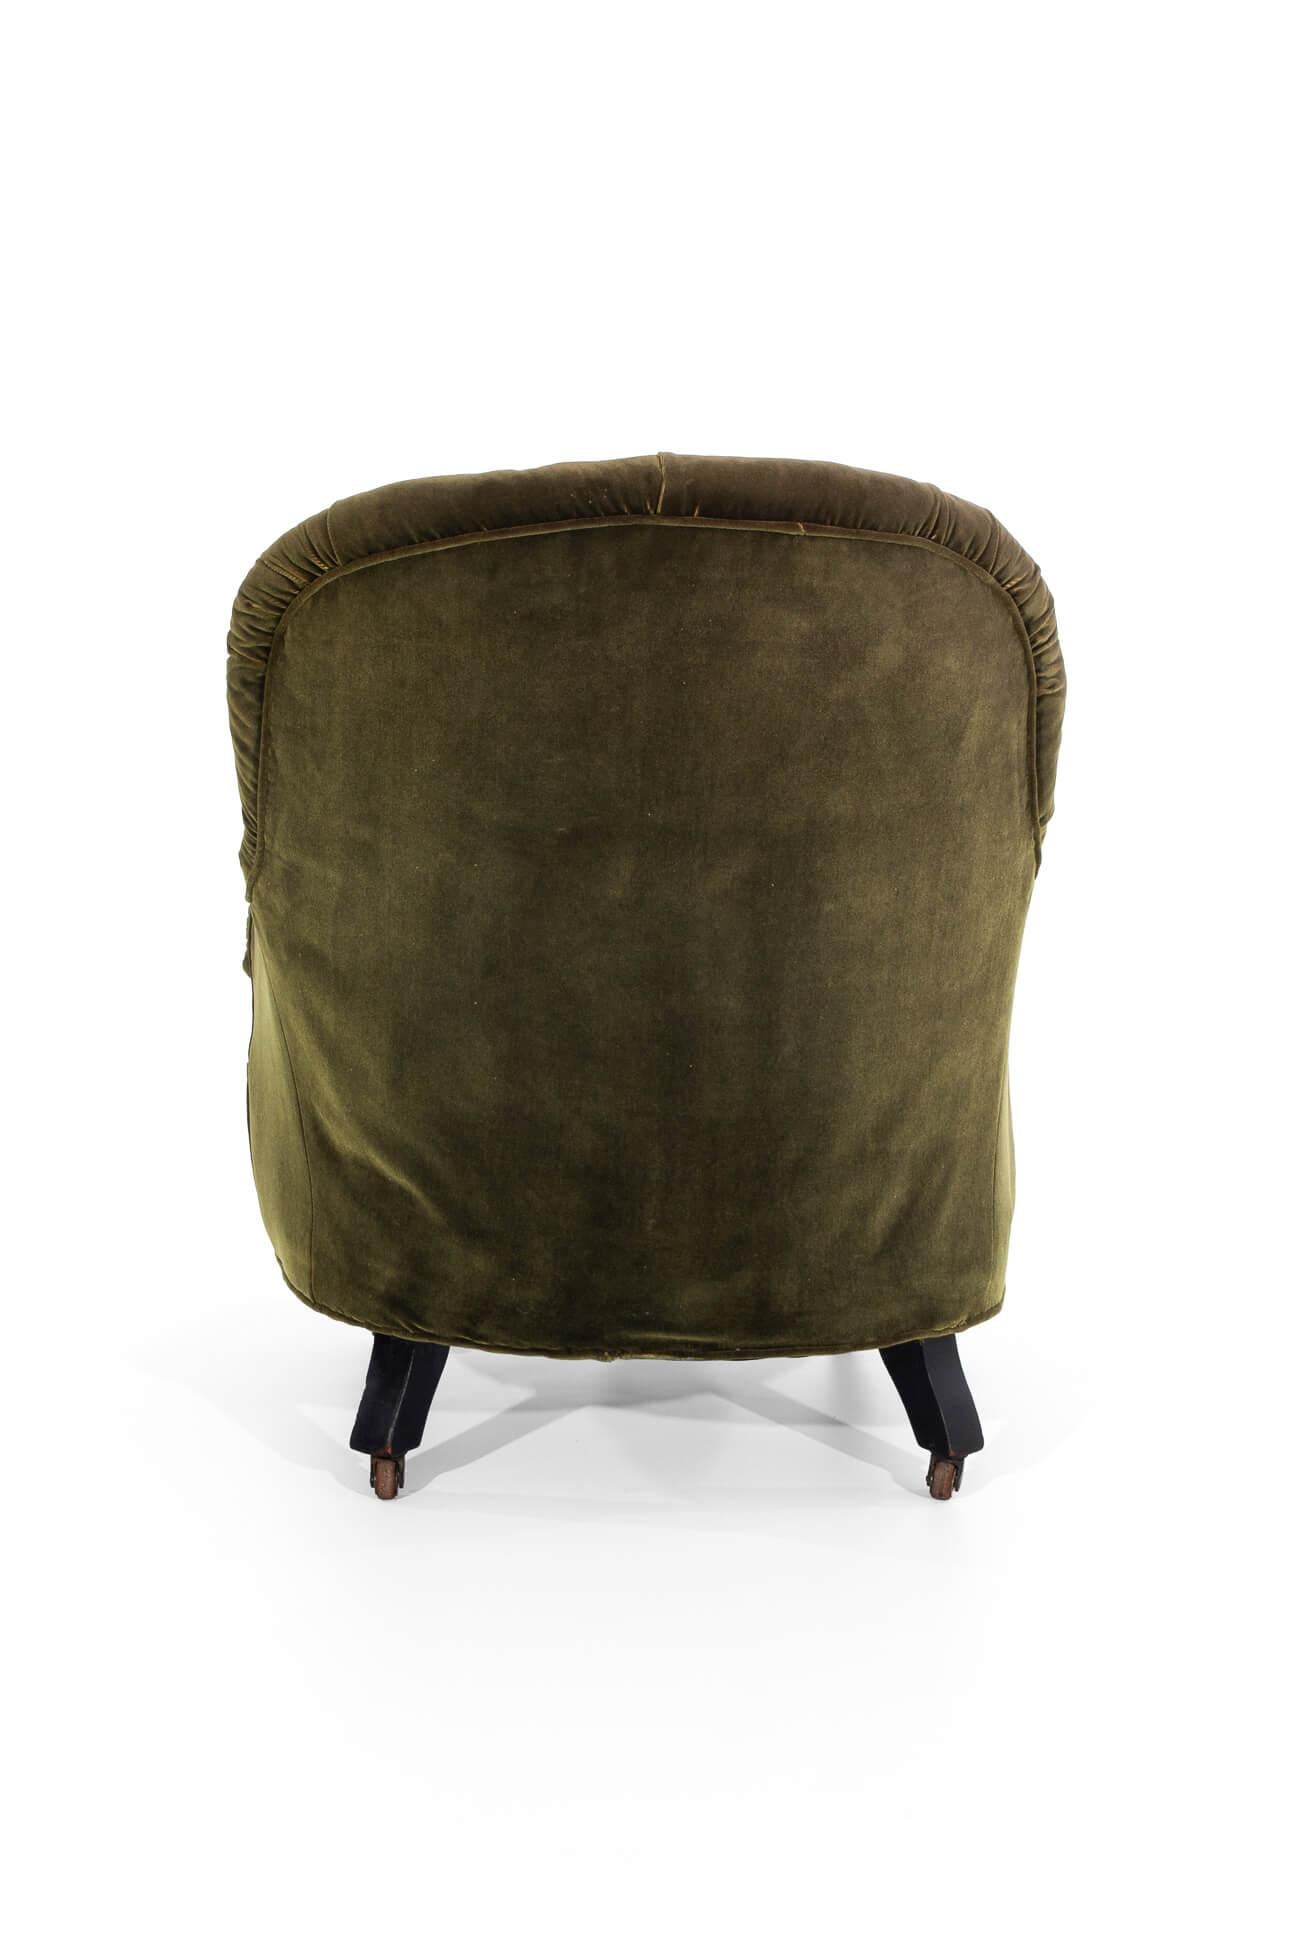 Upholstery Green Velvet Salon Chair